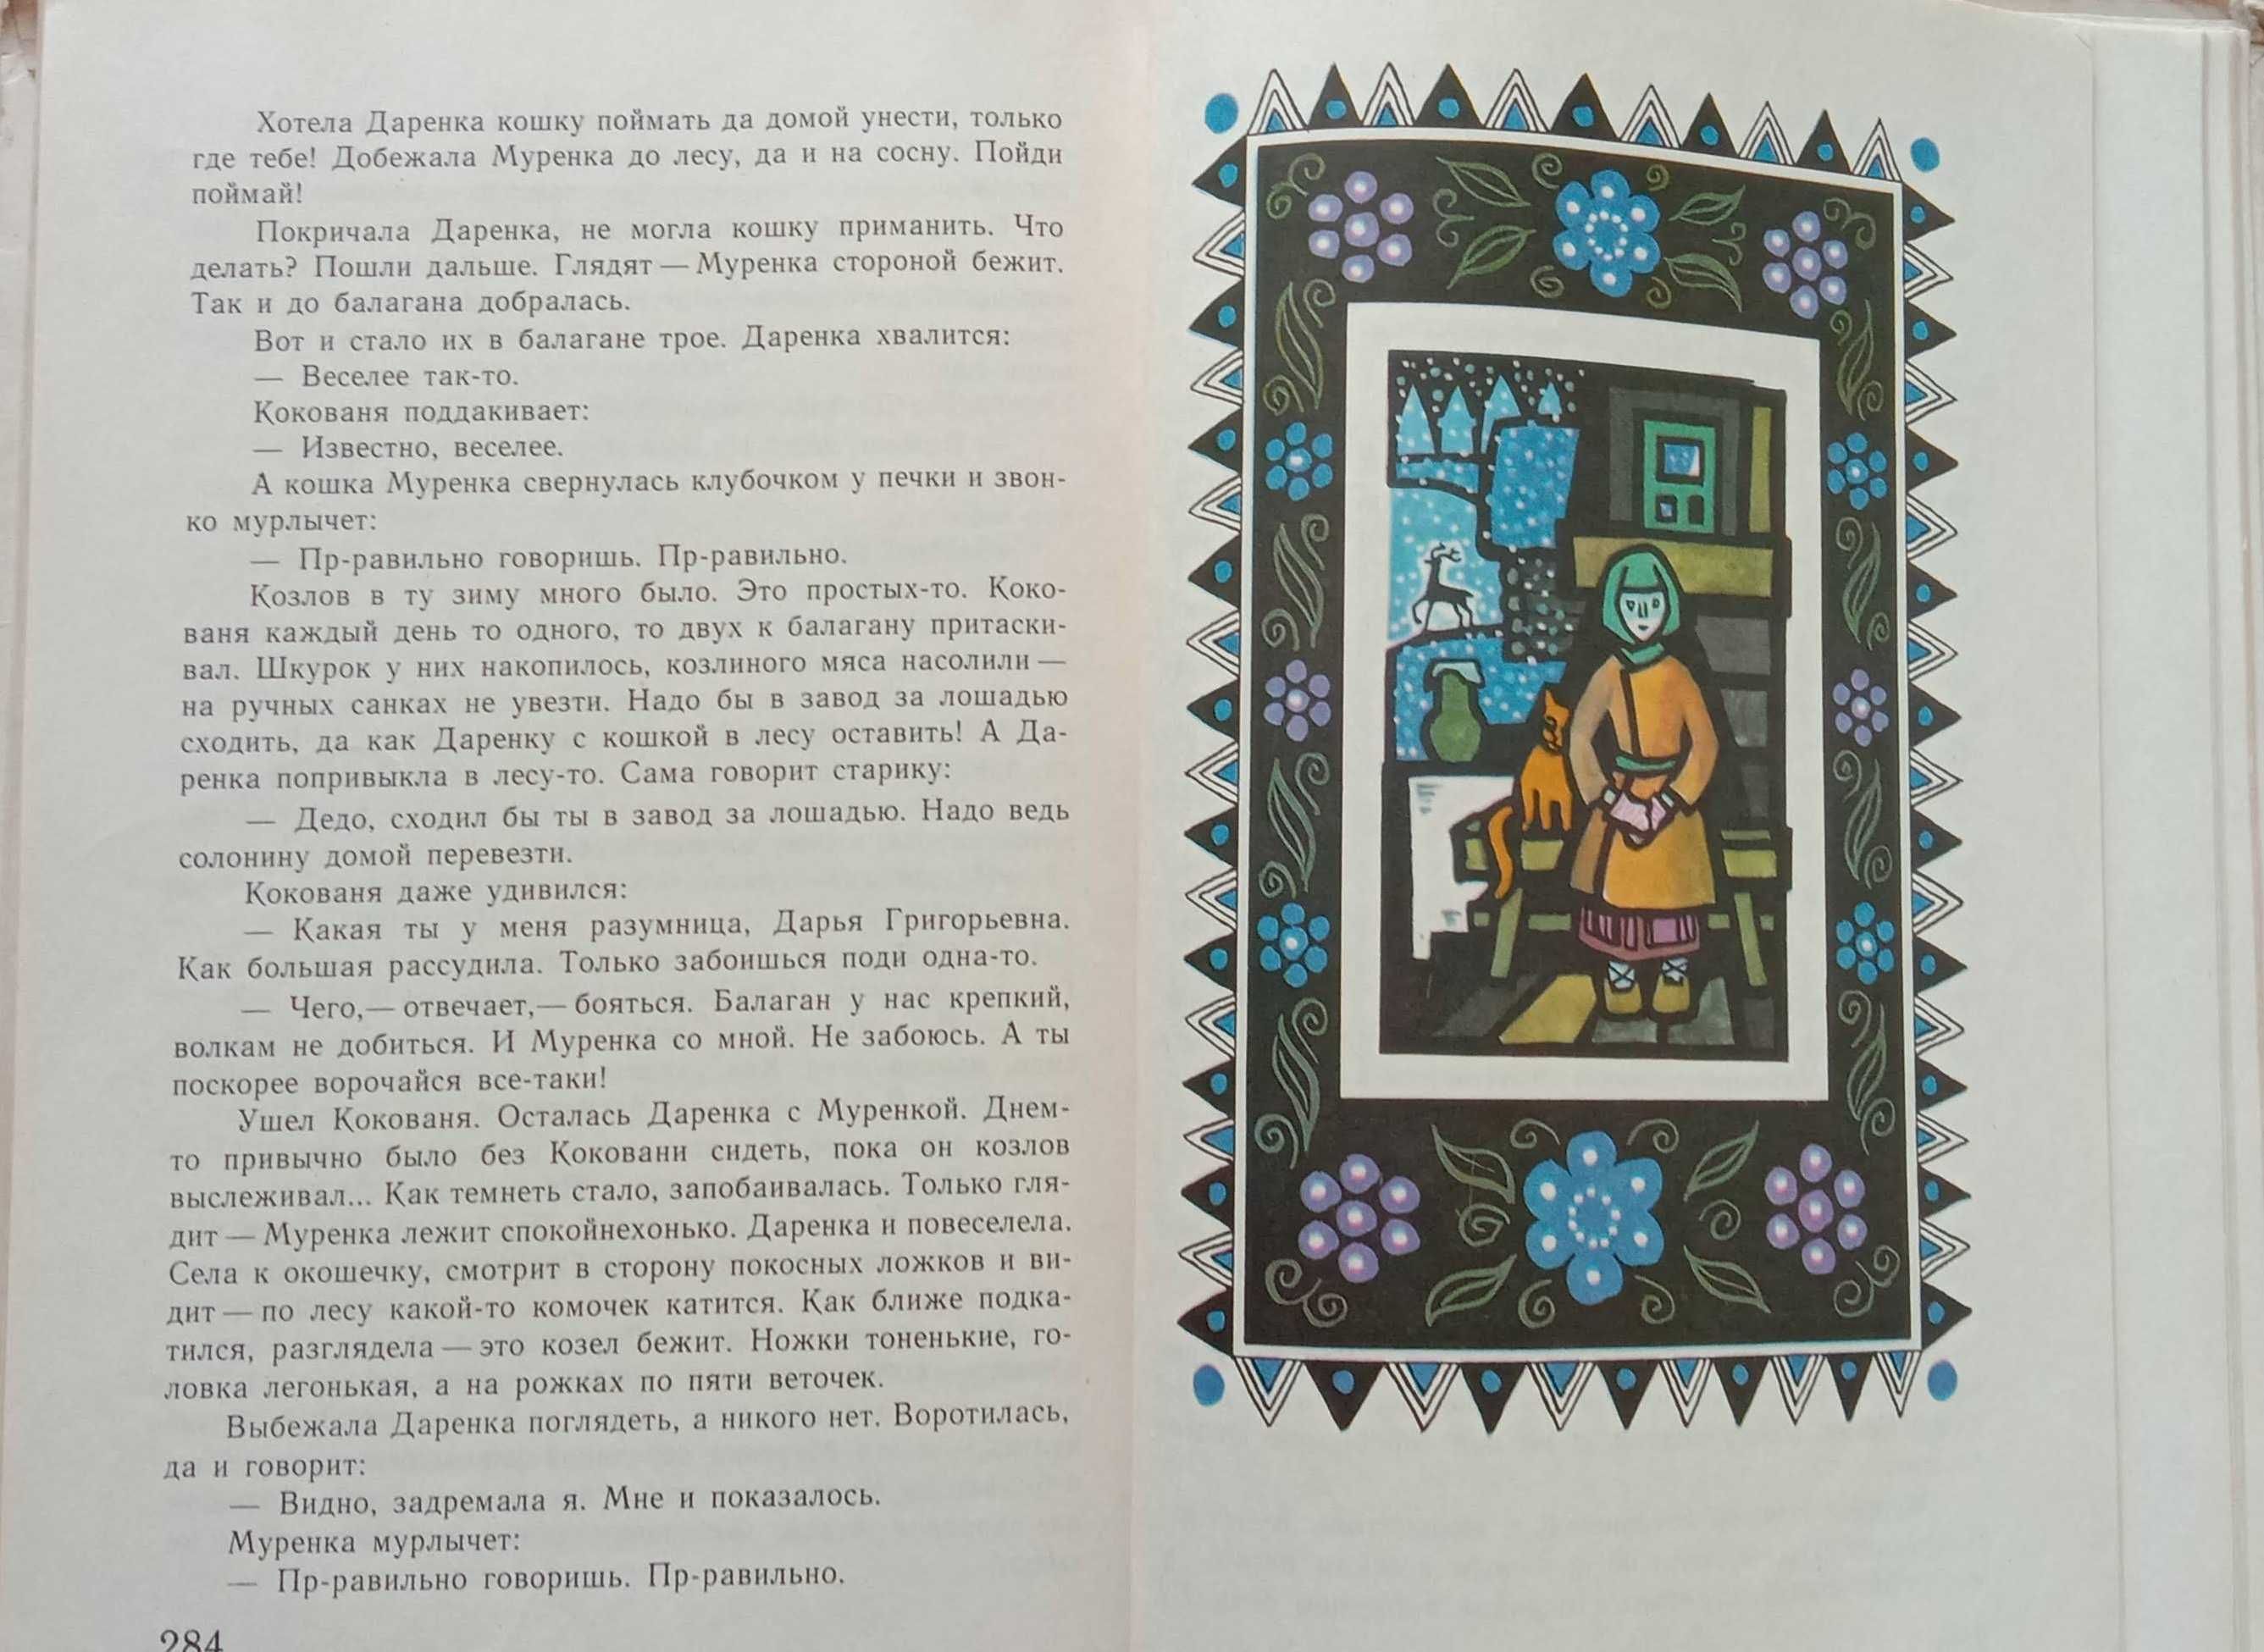 Книга «МАЛАХИТОВАЯ ШКАТУЛКА» Павел Бажов. Избранные сказы. - 1977 г.